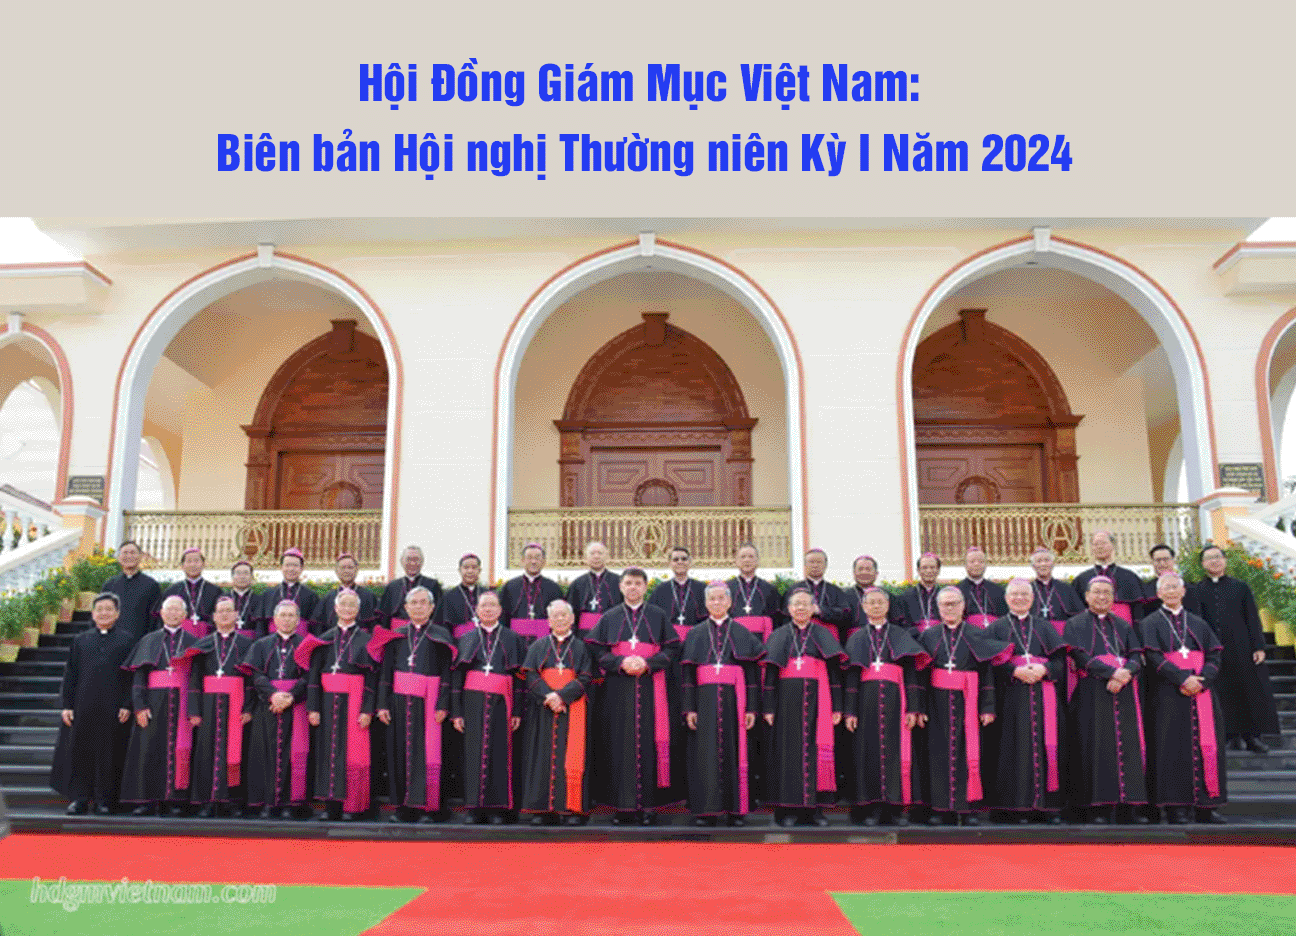 Hội Đồng Giám Mục Việt Nam: Biên bản Hội nghị Thường niên Kỳ I Năm 2024